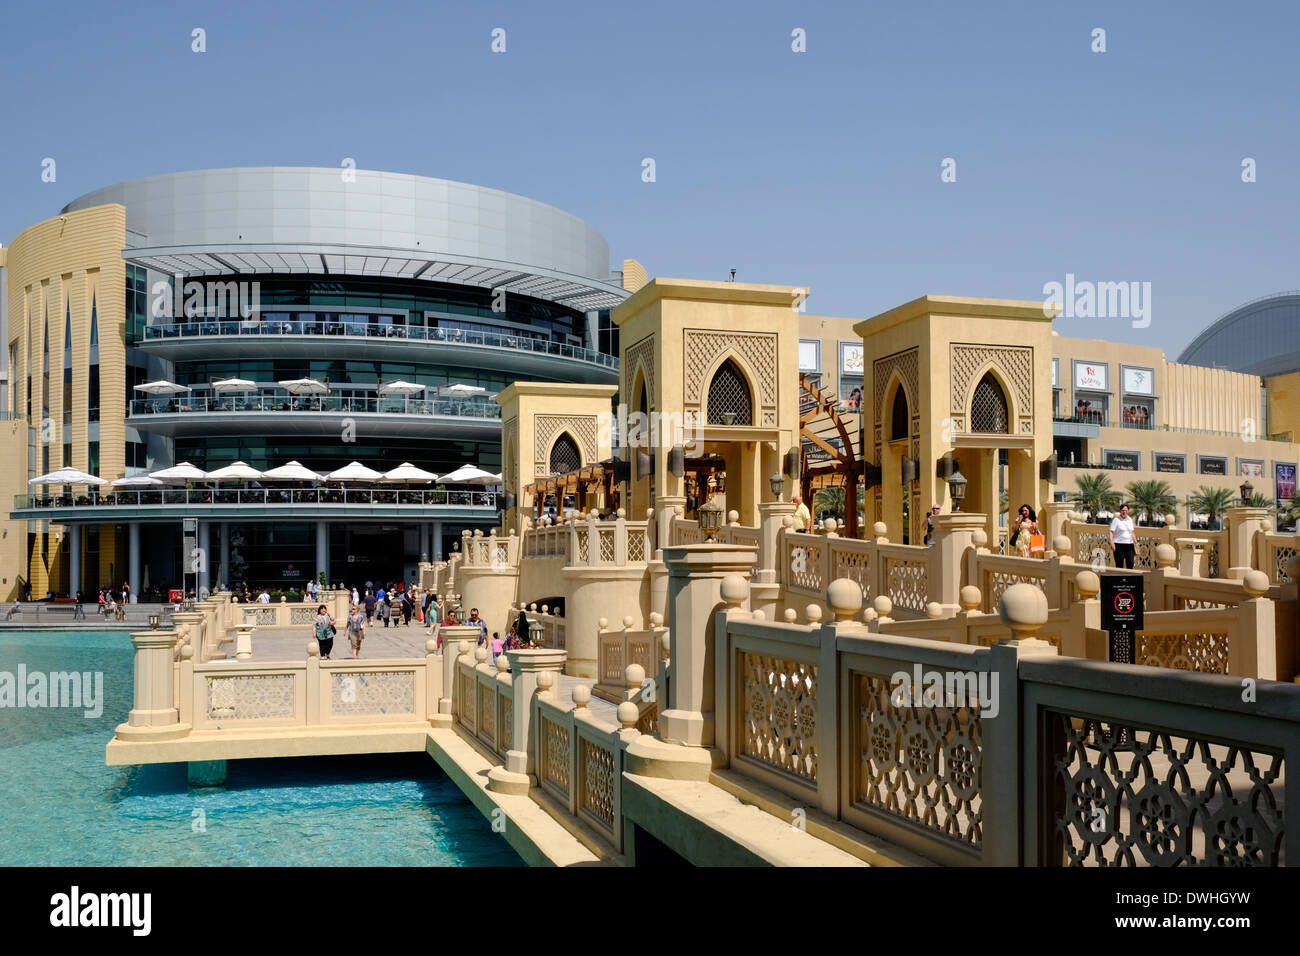 Dubai Mall and ornate footbridge crossing lake in Dubai United Arab Emirates Stock Photo